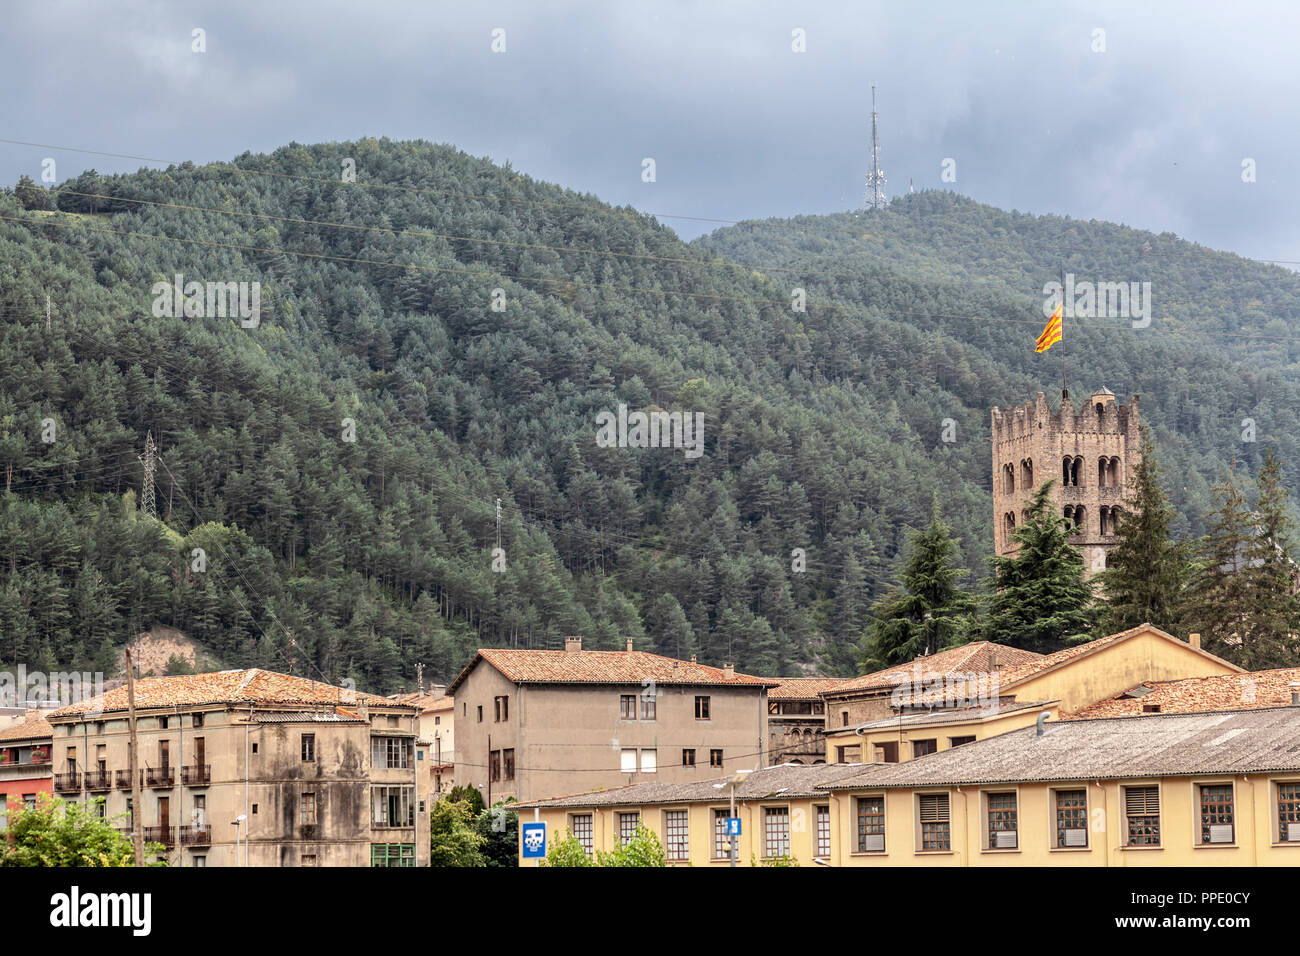 Allgemeine und Blick auf das Dorf, Ripoll, Katalonien, Spanien. Stockfoto